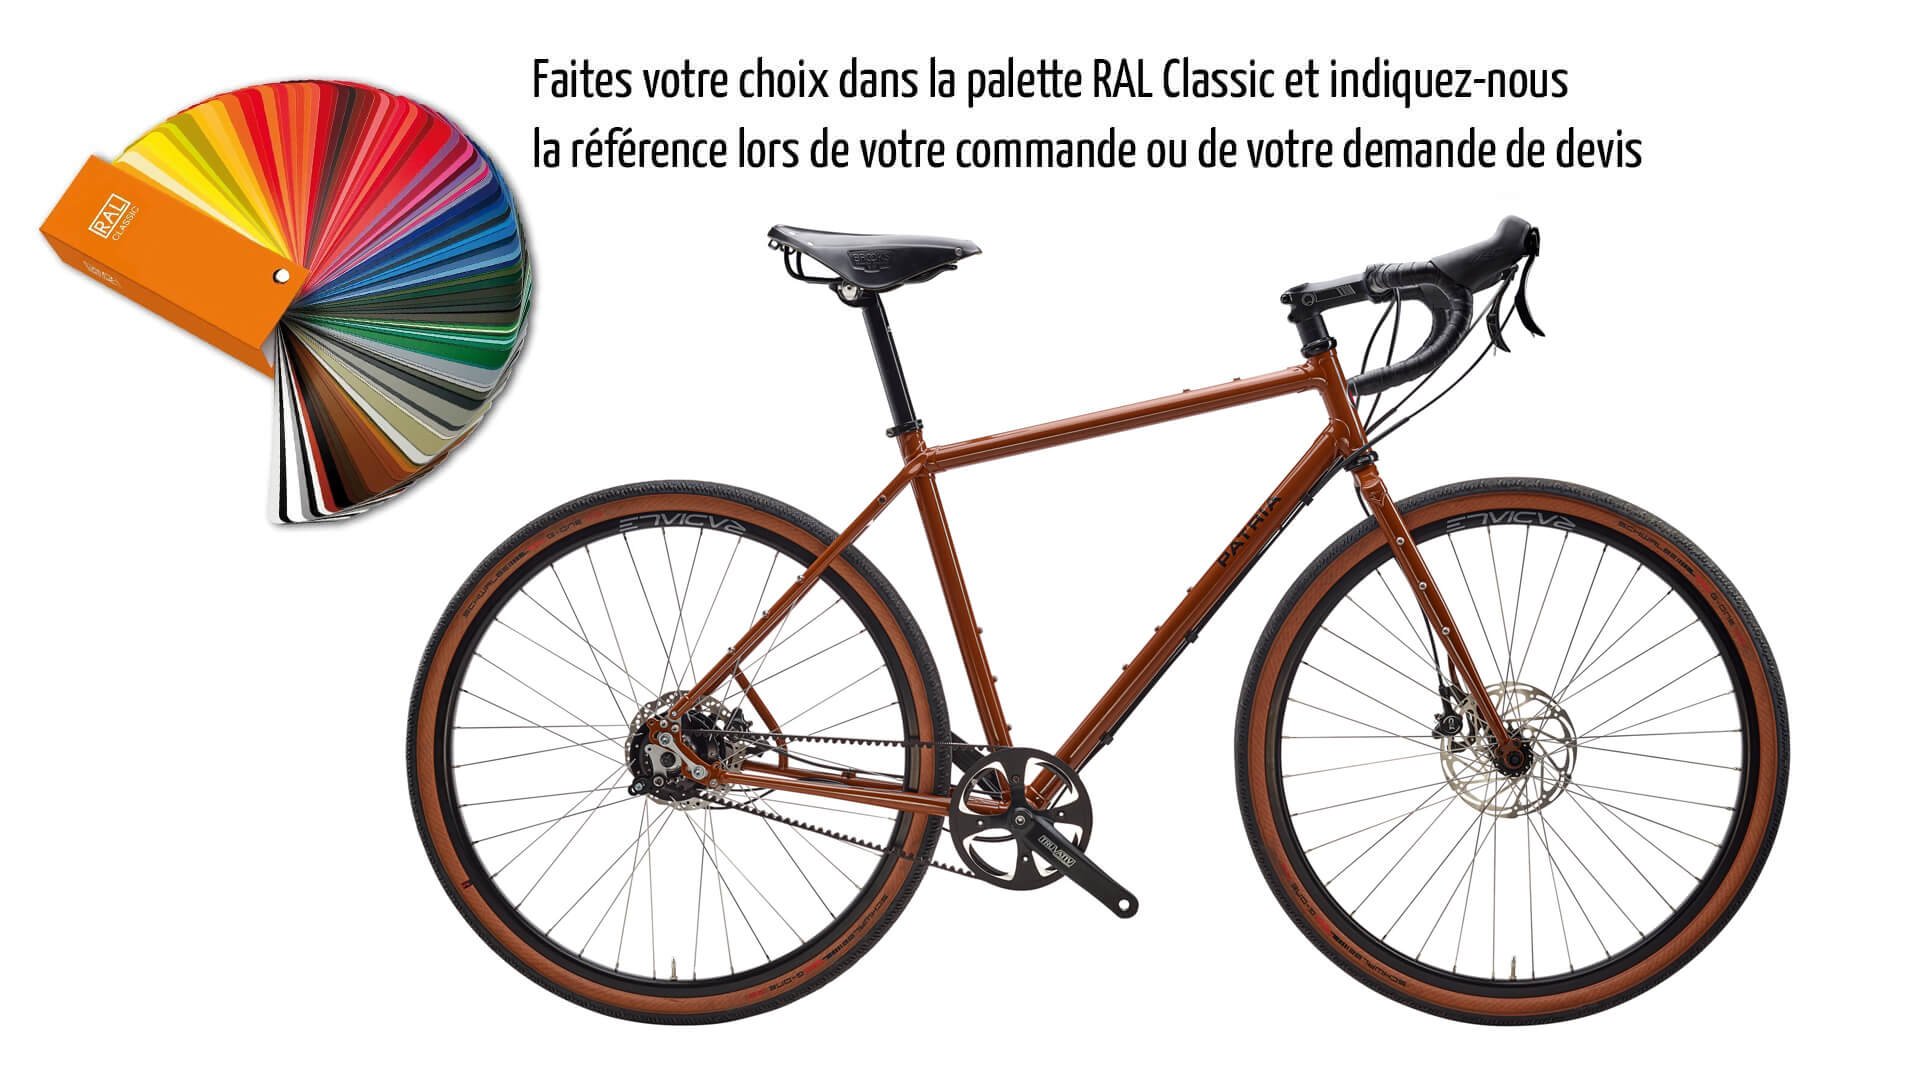 Vélo Gravel Tribos avec cadre Diamant couleur RAL 8007 (brun fauve) et transmission Rohloff 14 vitesses